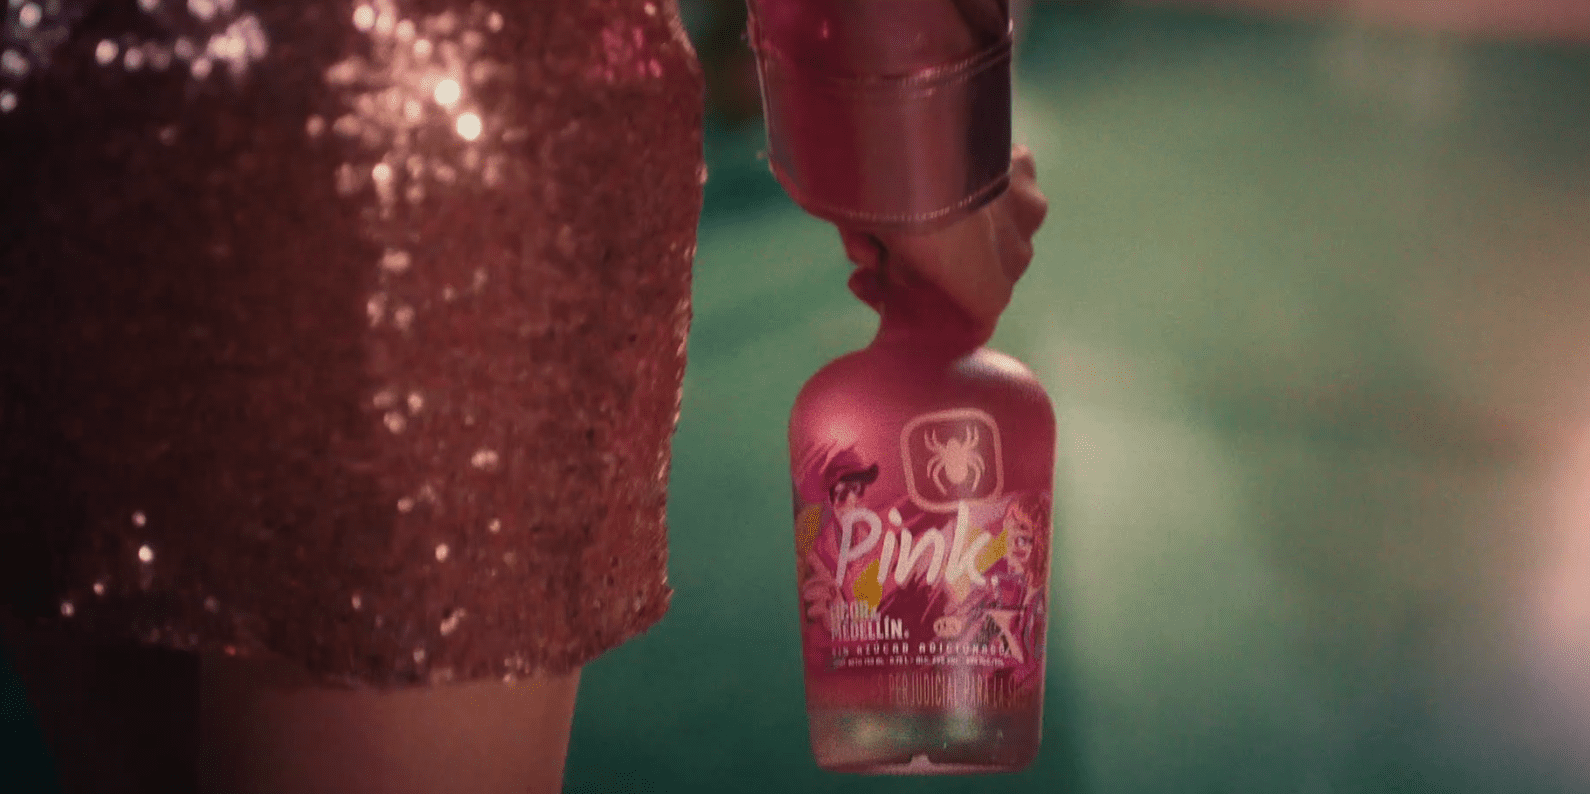 Lanzamiento de licor 'Pink' en el concierto de Karol G